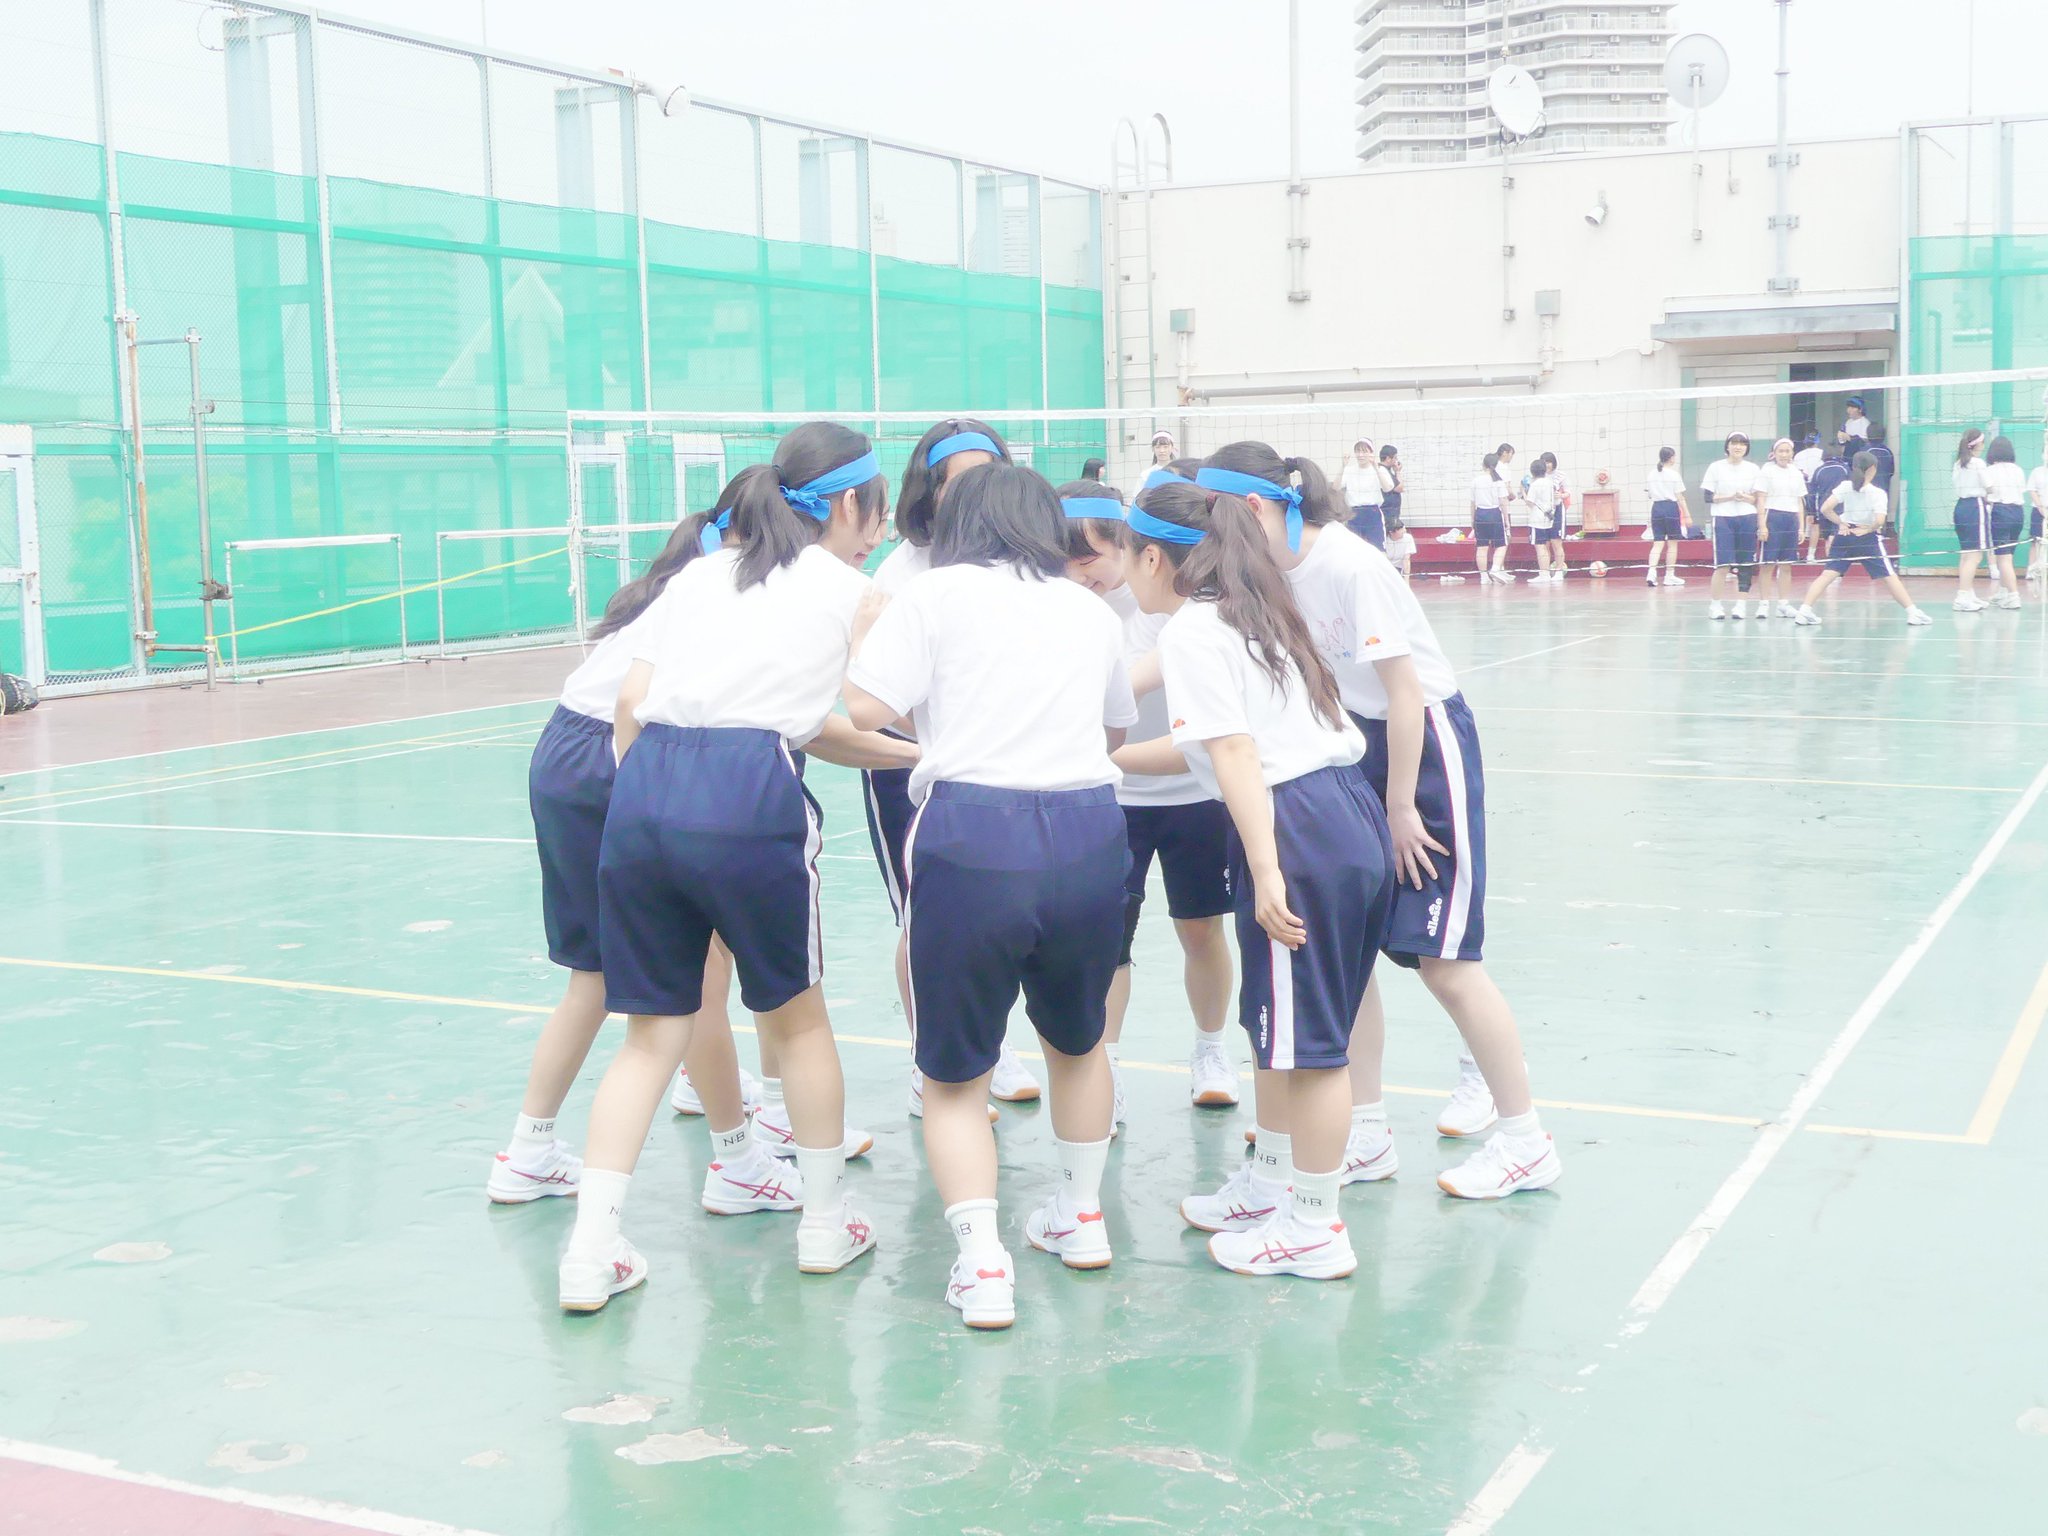 日本大学豊山女子高等学校・中学校 on Twitter: "【高校】本日、高校生はスポーツ大会を行いました。今日の天候のように熱く燃え上がって